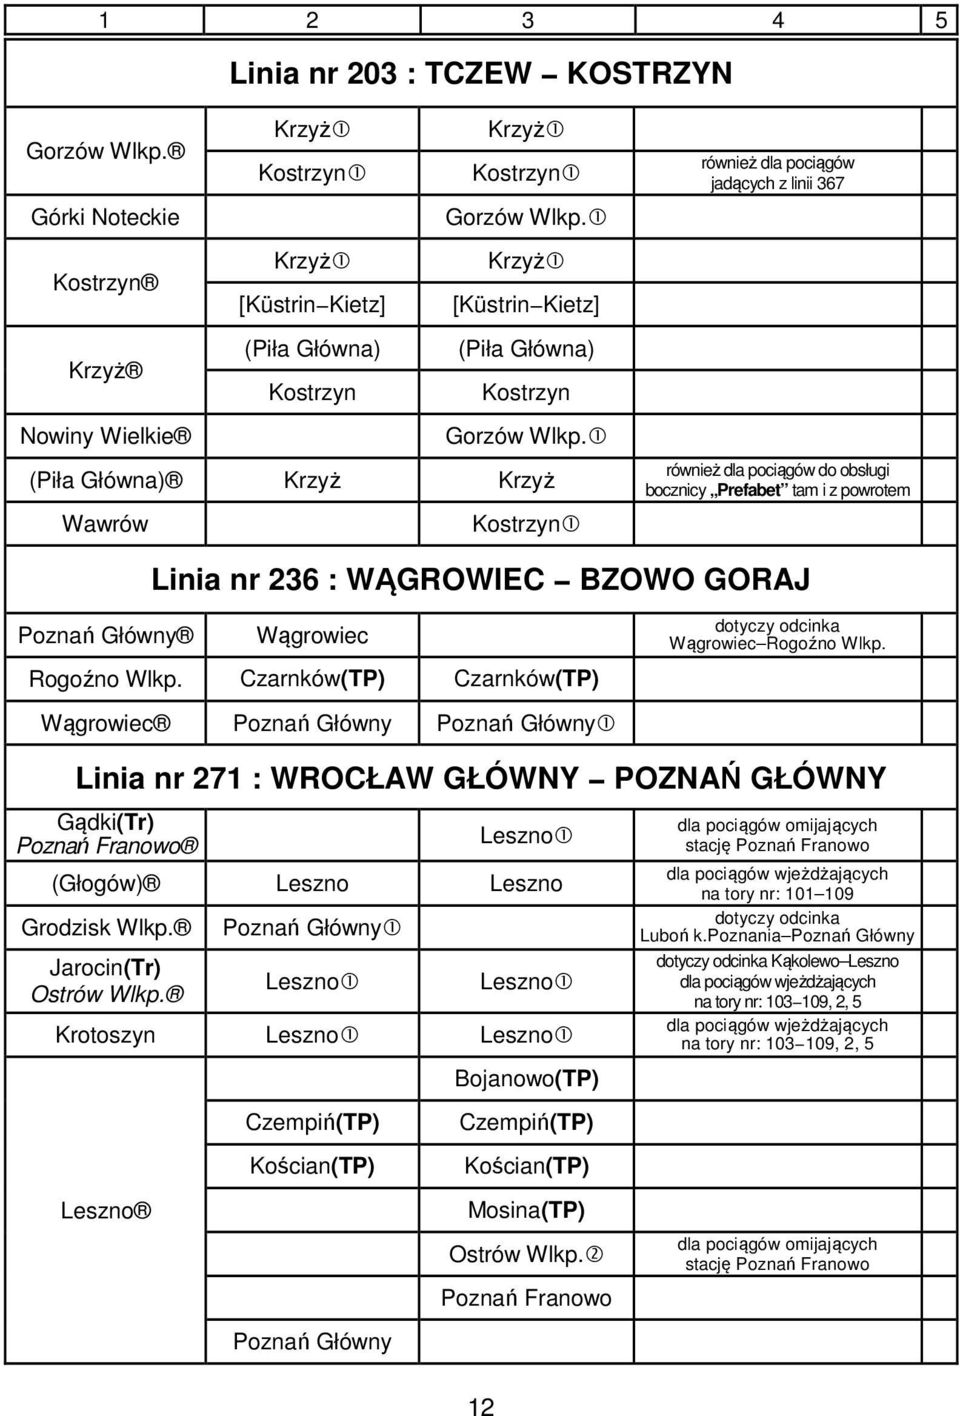 1 (Piła Główna) Krzyż Krzyż Wawrów Kostrzyn1 również dla pociągów jadących z linii 367 również dla pociągów do obsługi bocznicy Prefabet tam i z powrotem Linia nr 236 : WĄGROWIEC BZOWO GORAJ Poznań